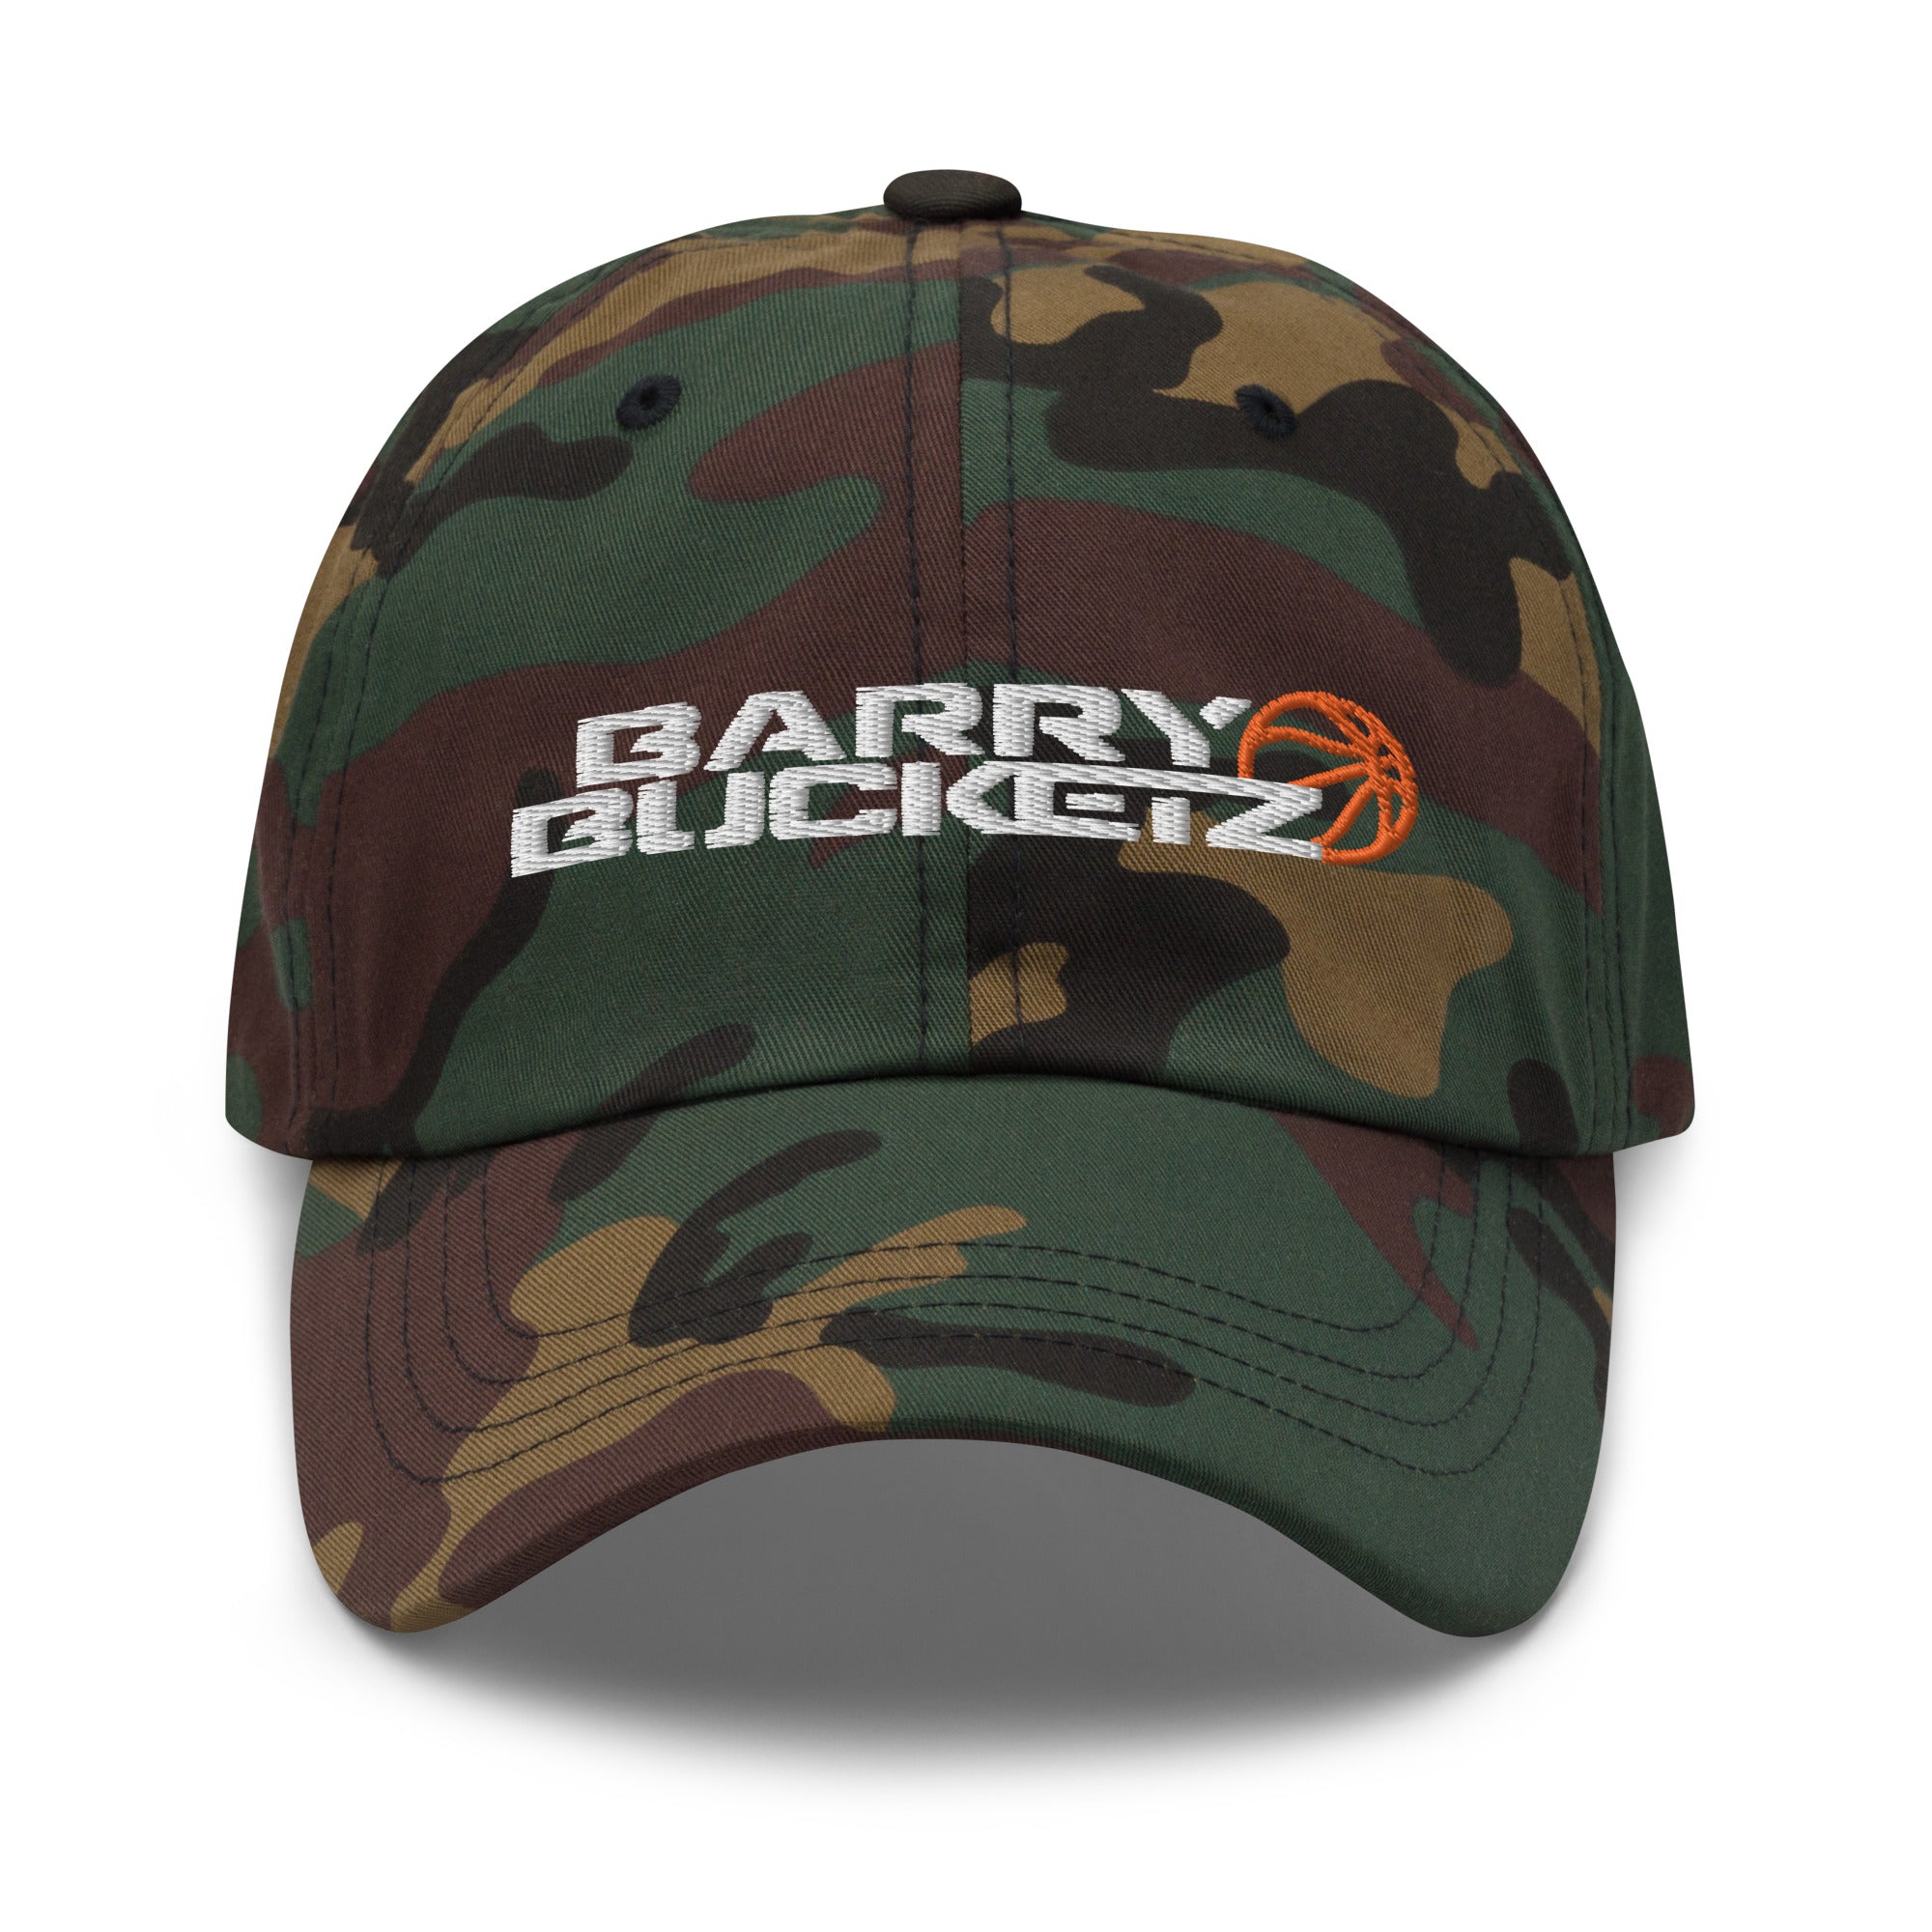 BARRY BUCKETZ DAD HAT